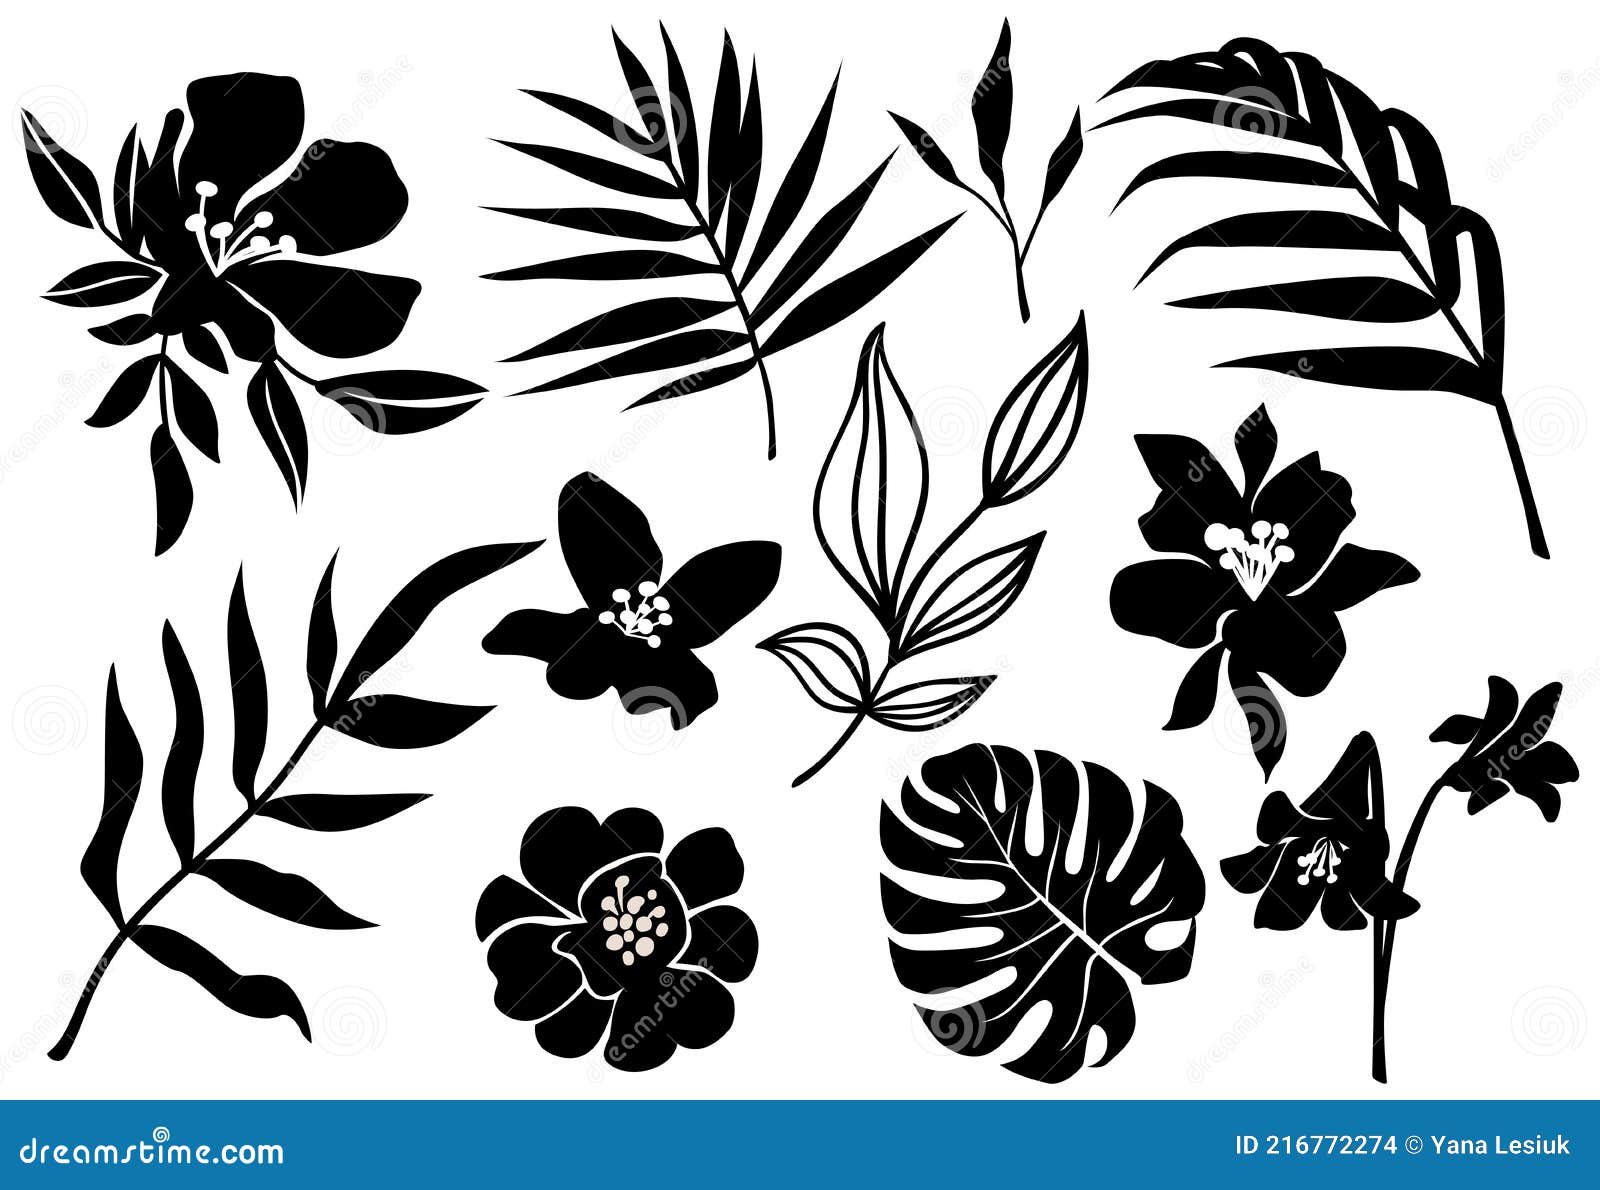 Flower Silhouette Stock Illustrations – 465,993 Flower Silhouette ...